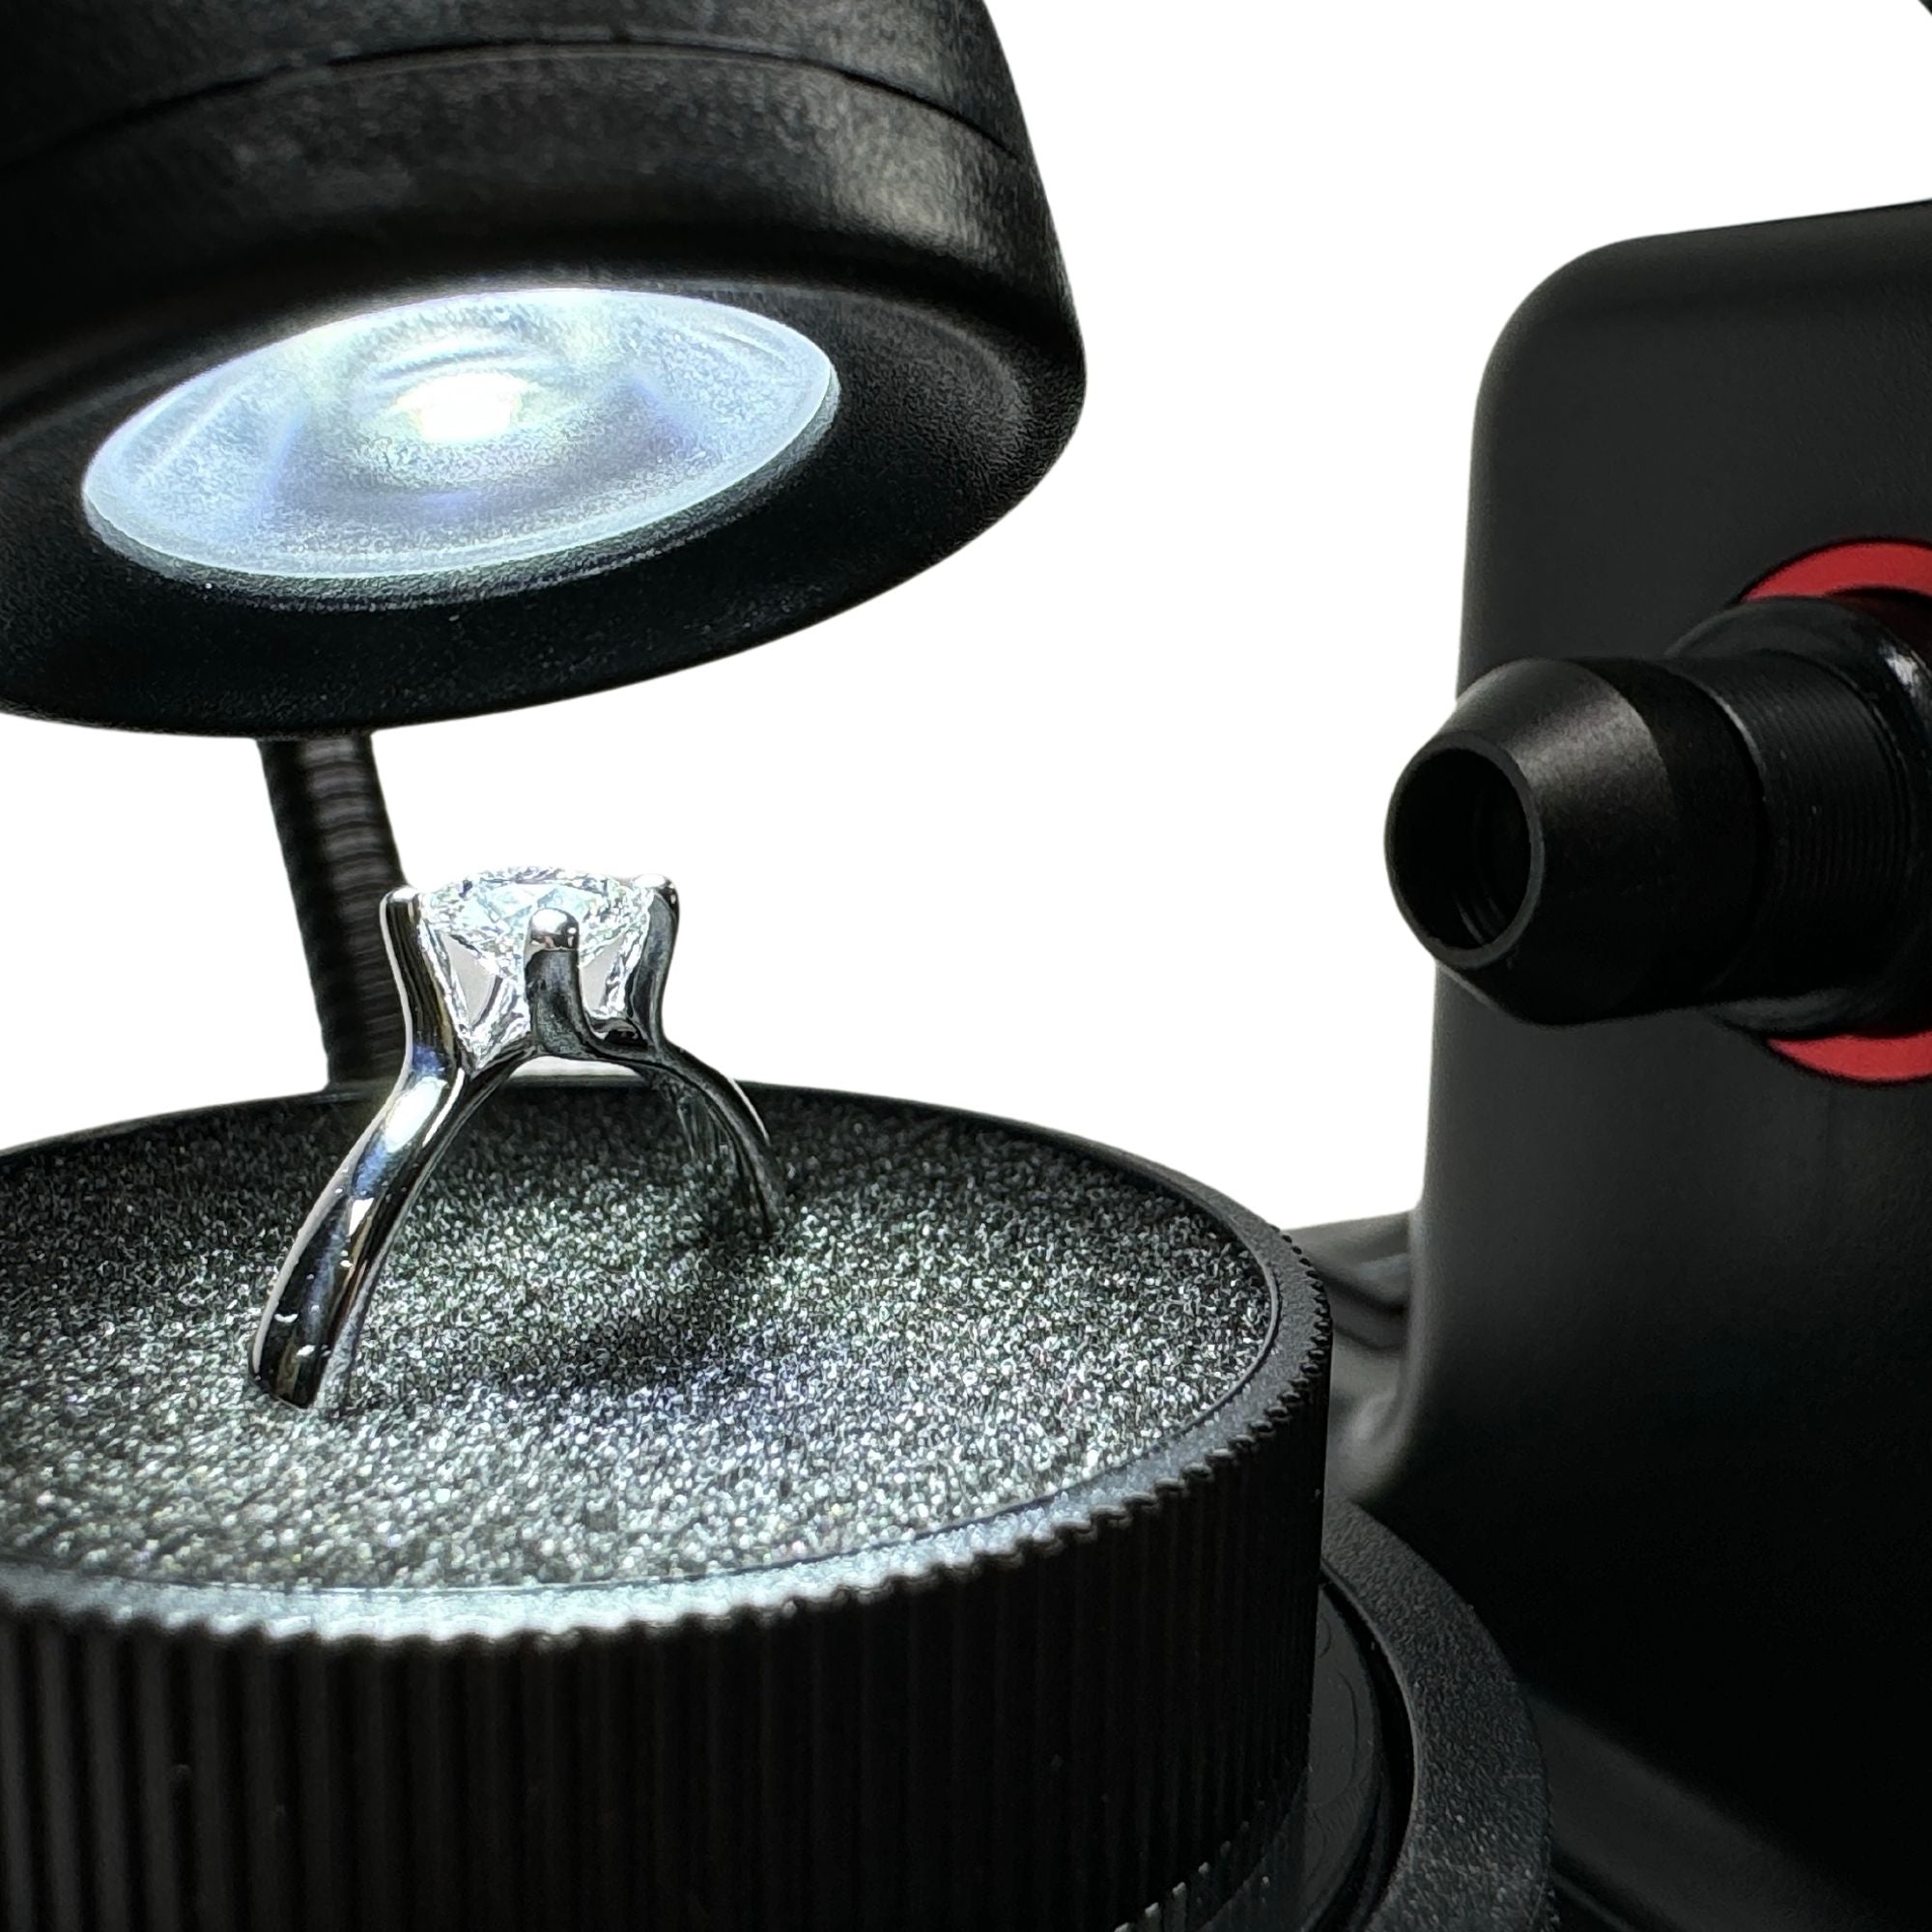 Microscope numérique pour afficher une désignation laser sur un diamant